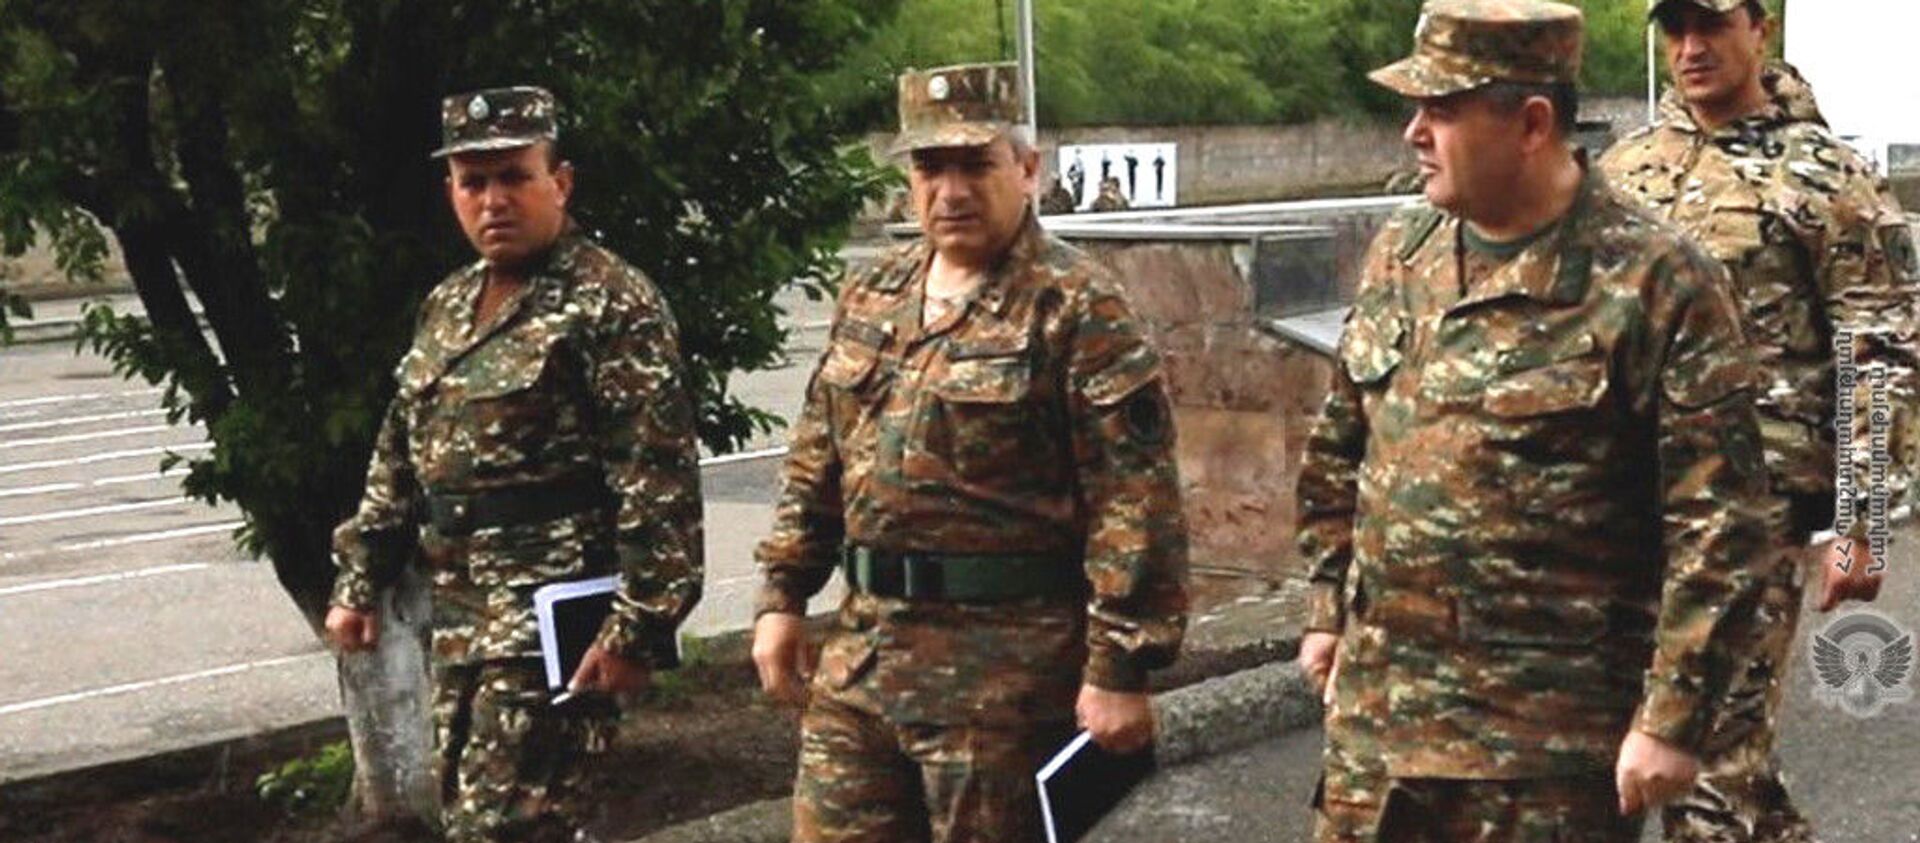 Глава Генштаба ВС РА генерал-лейтенант Артак Давтян с рабочим визитом посетил воинские части (7 мая 2921) - Sputnik Армения, 1920, 07.05.2021